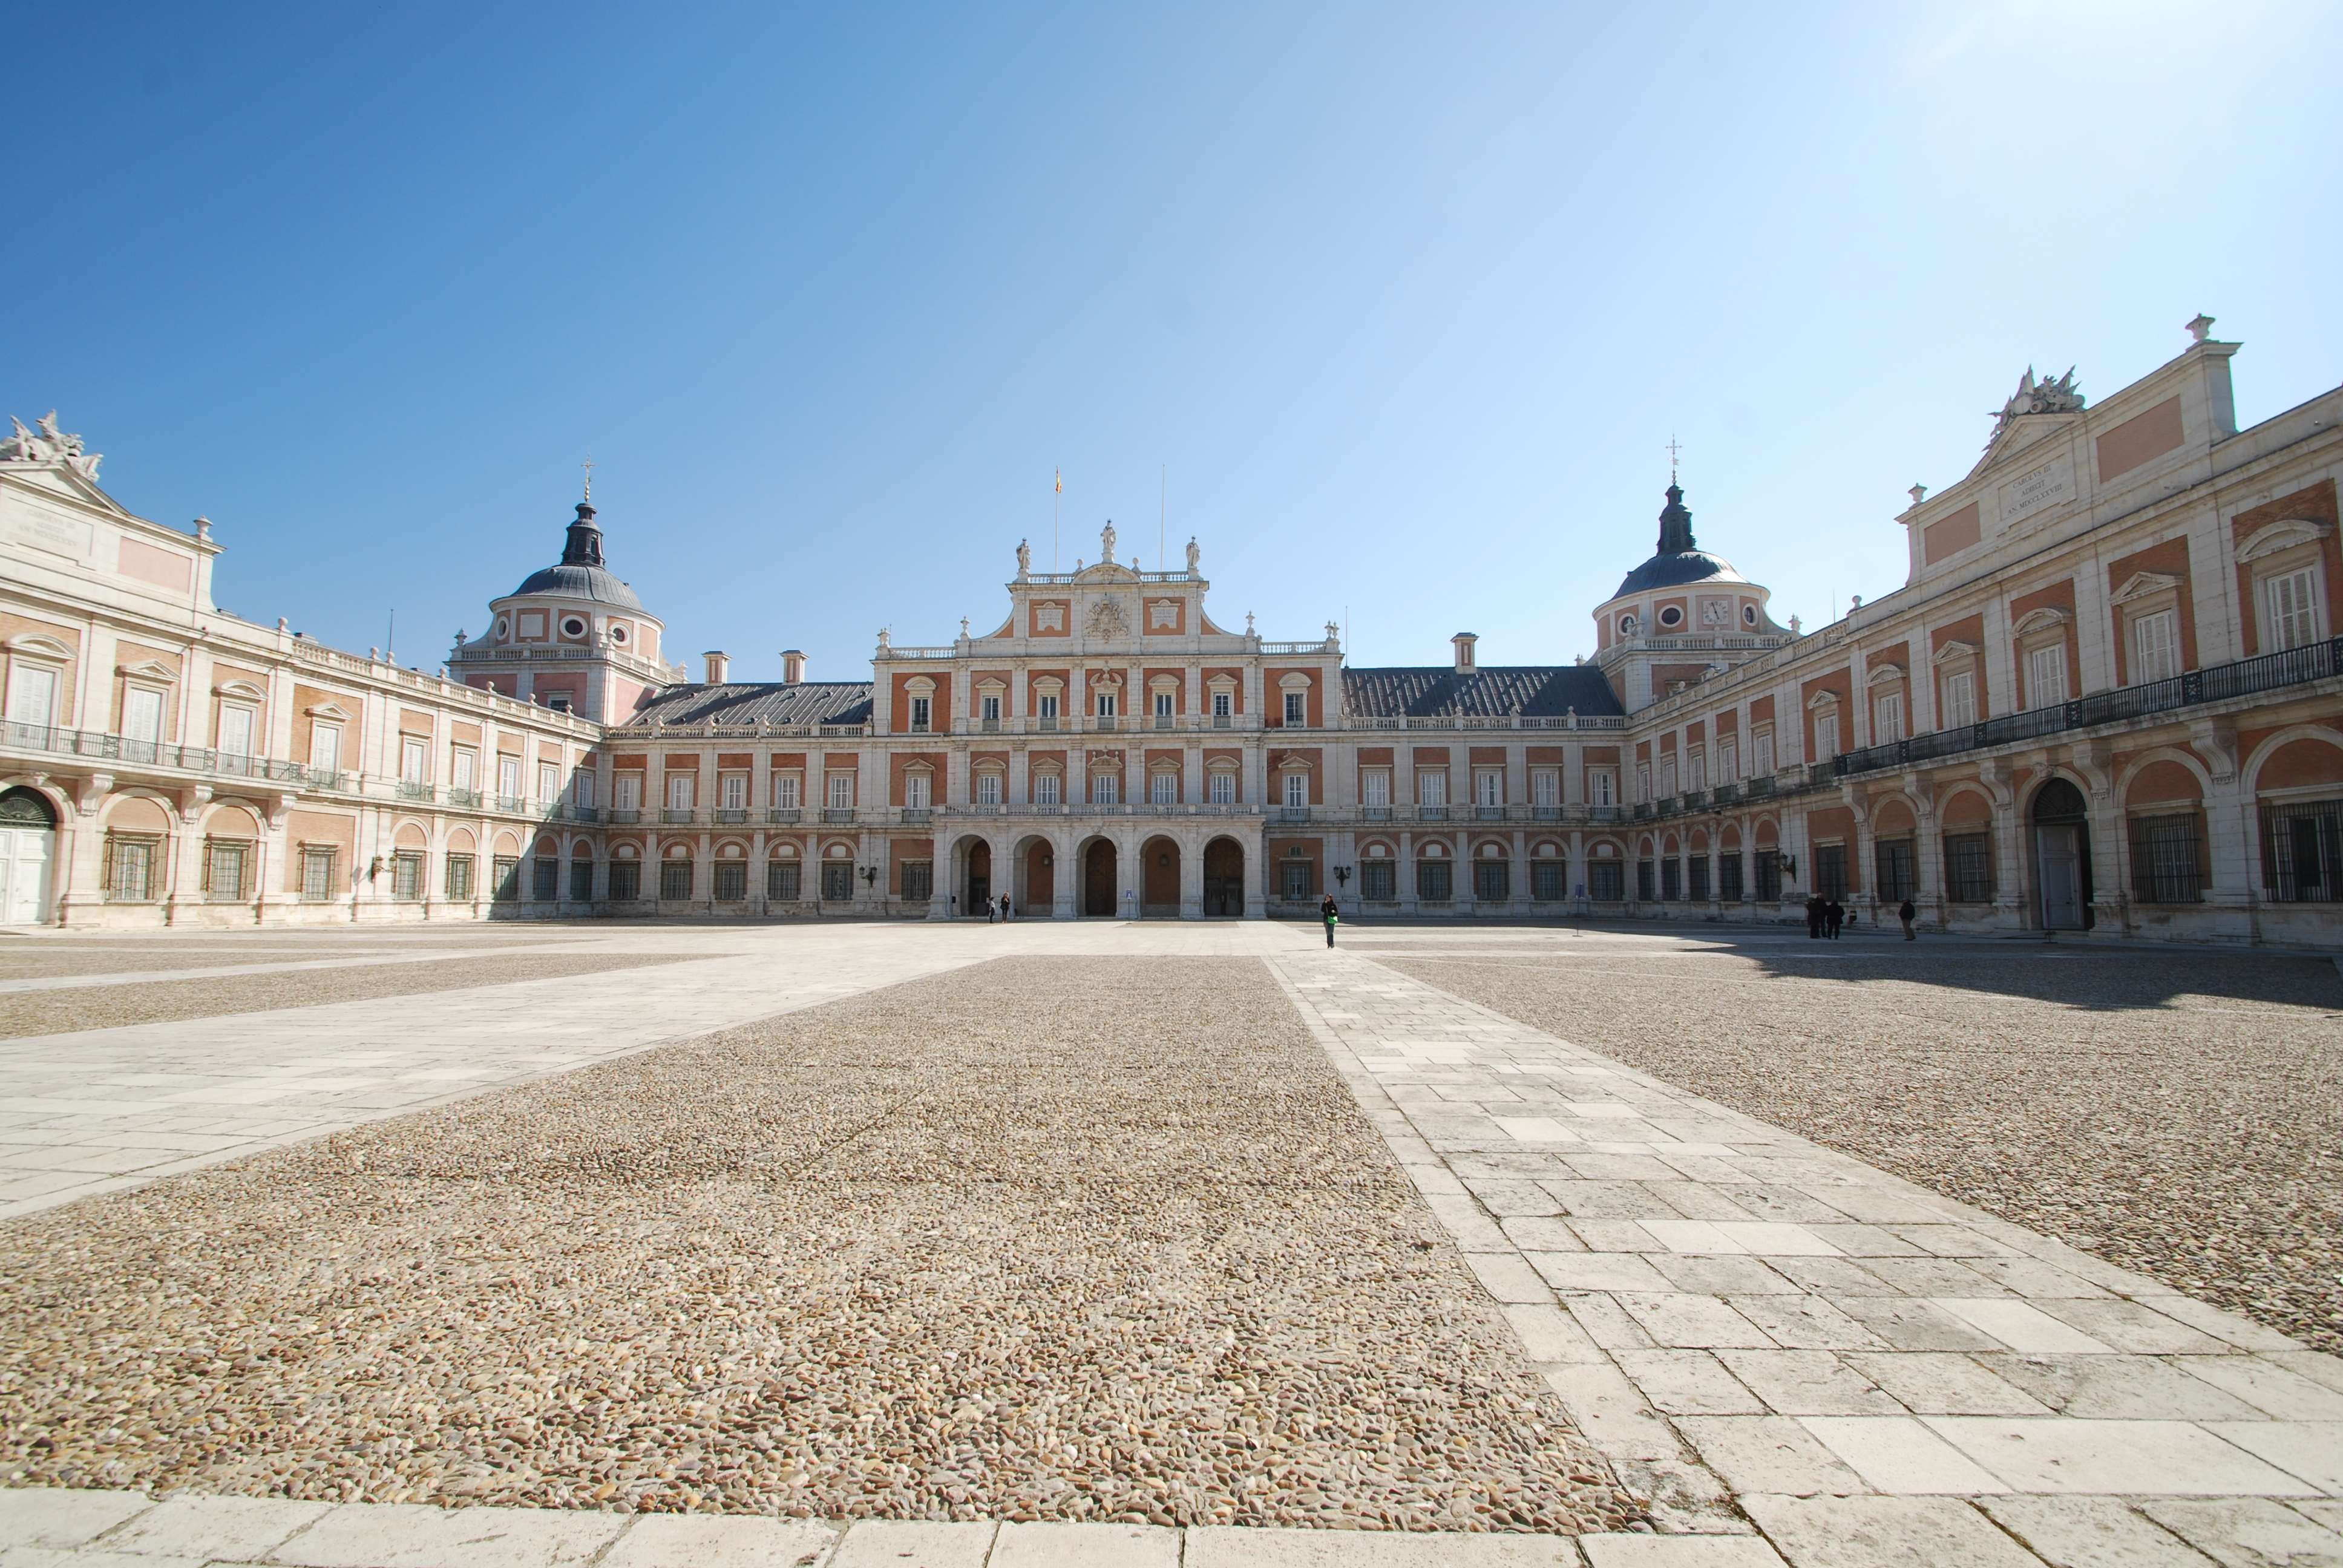 Excursiones desde Madrid - Blogs de España - Aranjuez (1)